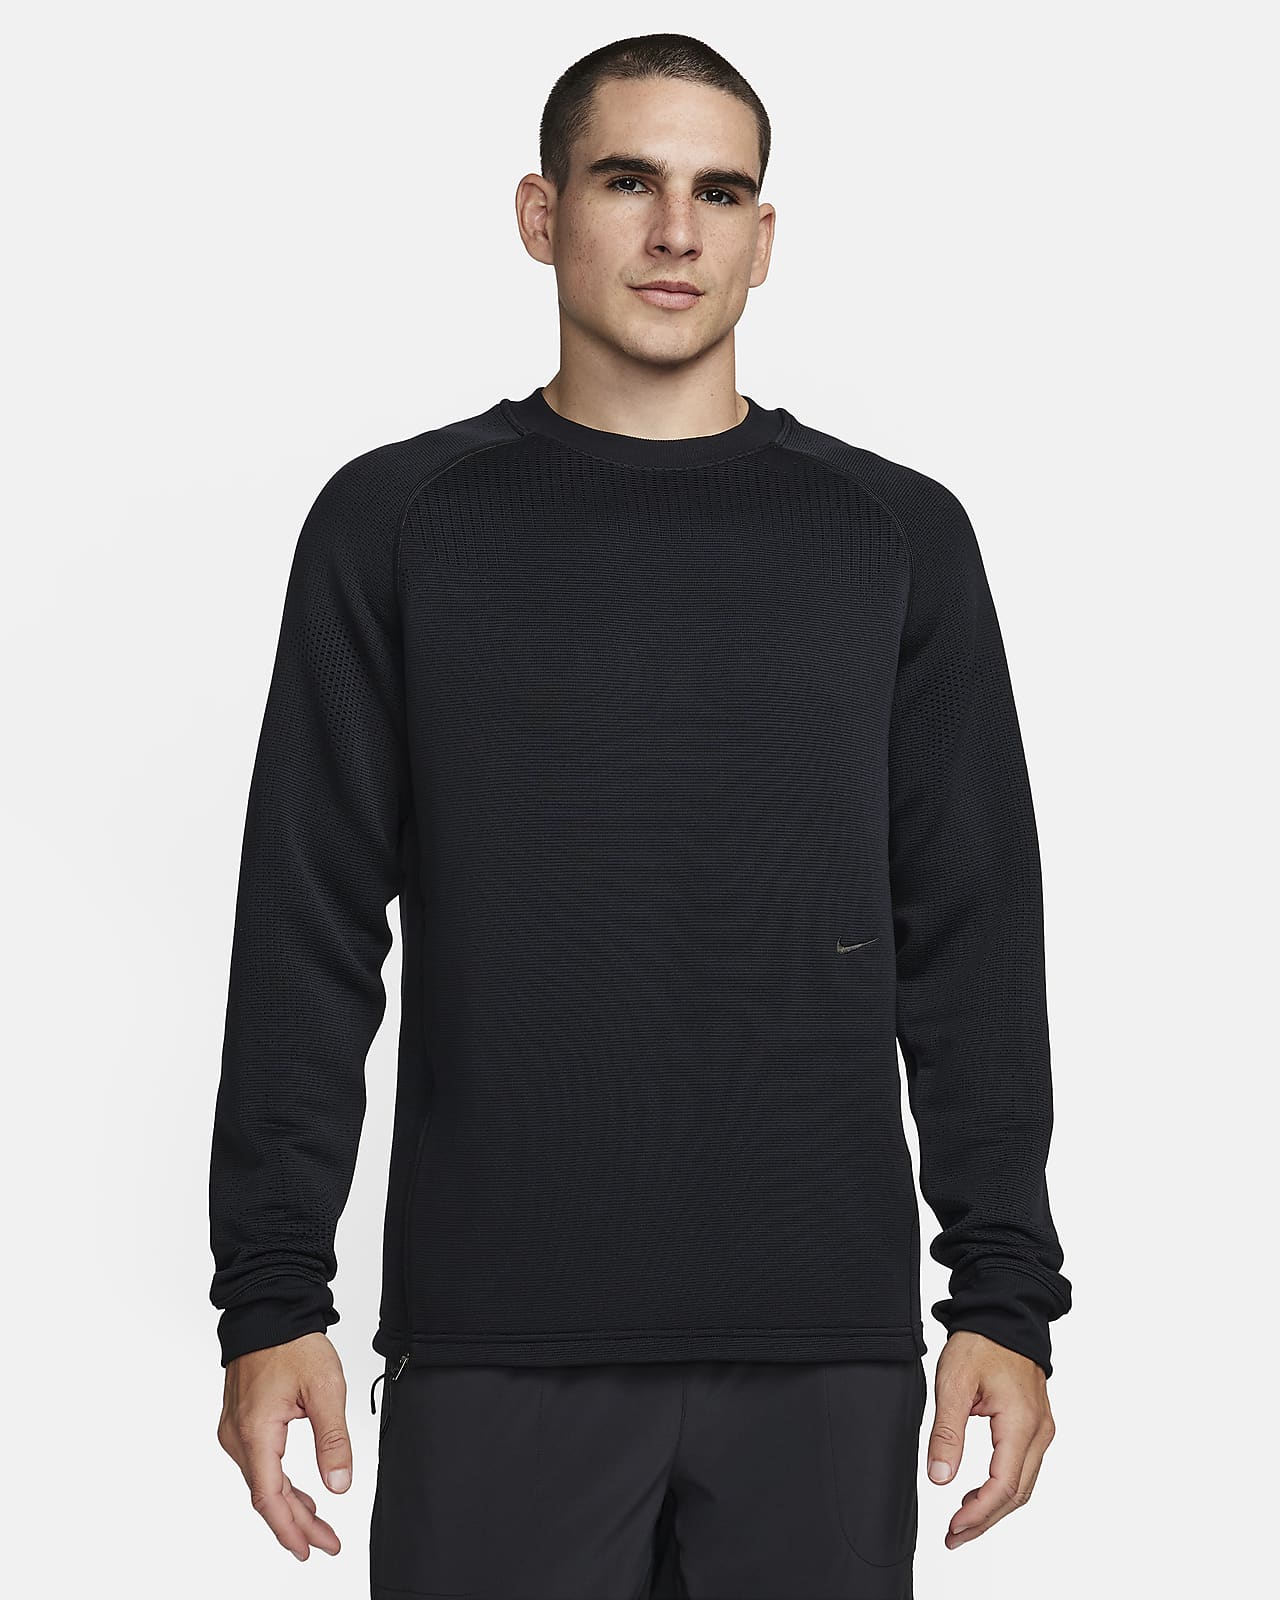 Nike A.P.S. Męska uniwersalna bluza z półokrągłym dekoltem Therma-FIT ADV